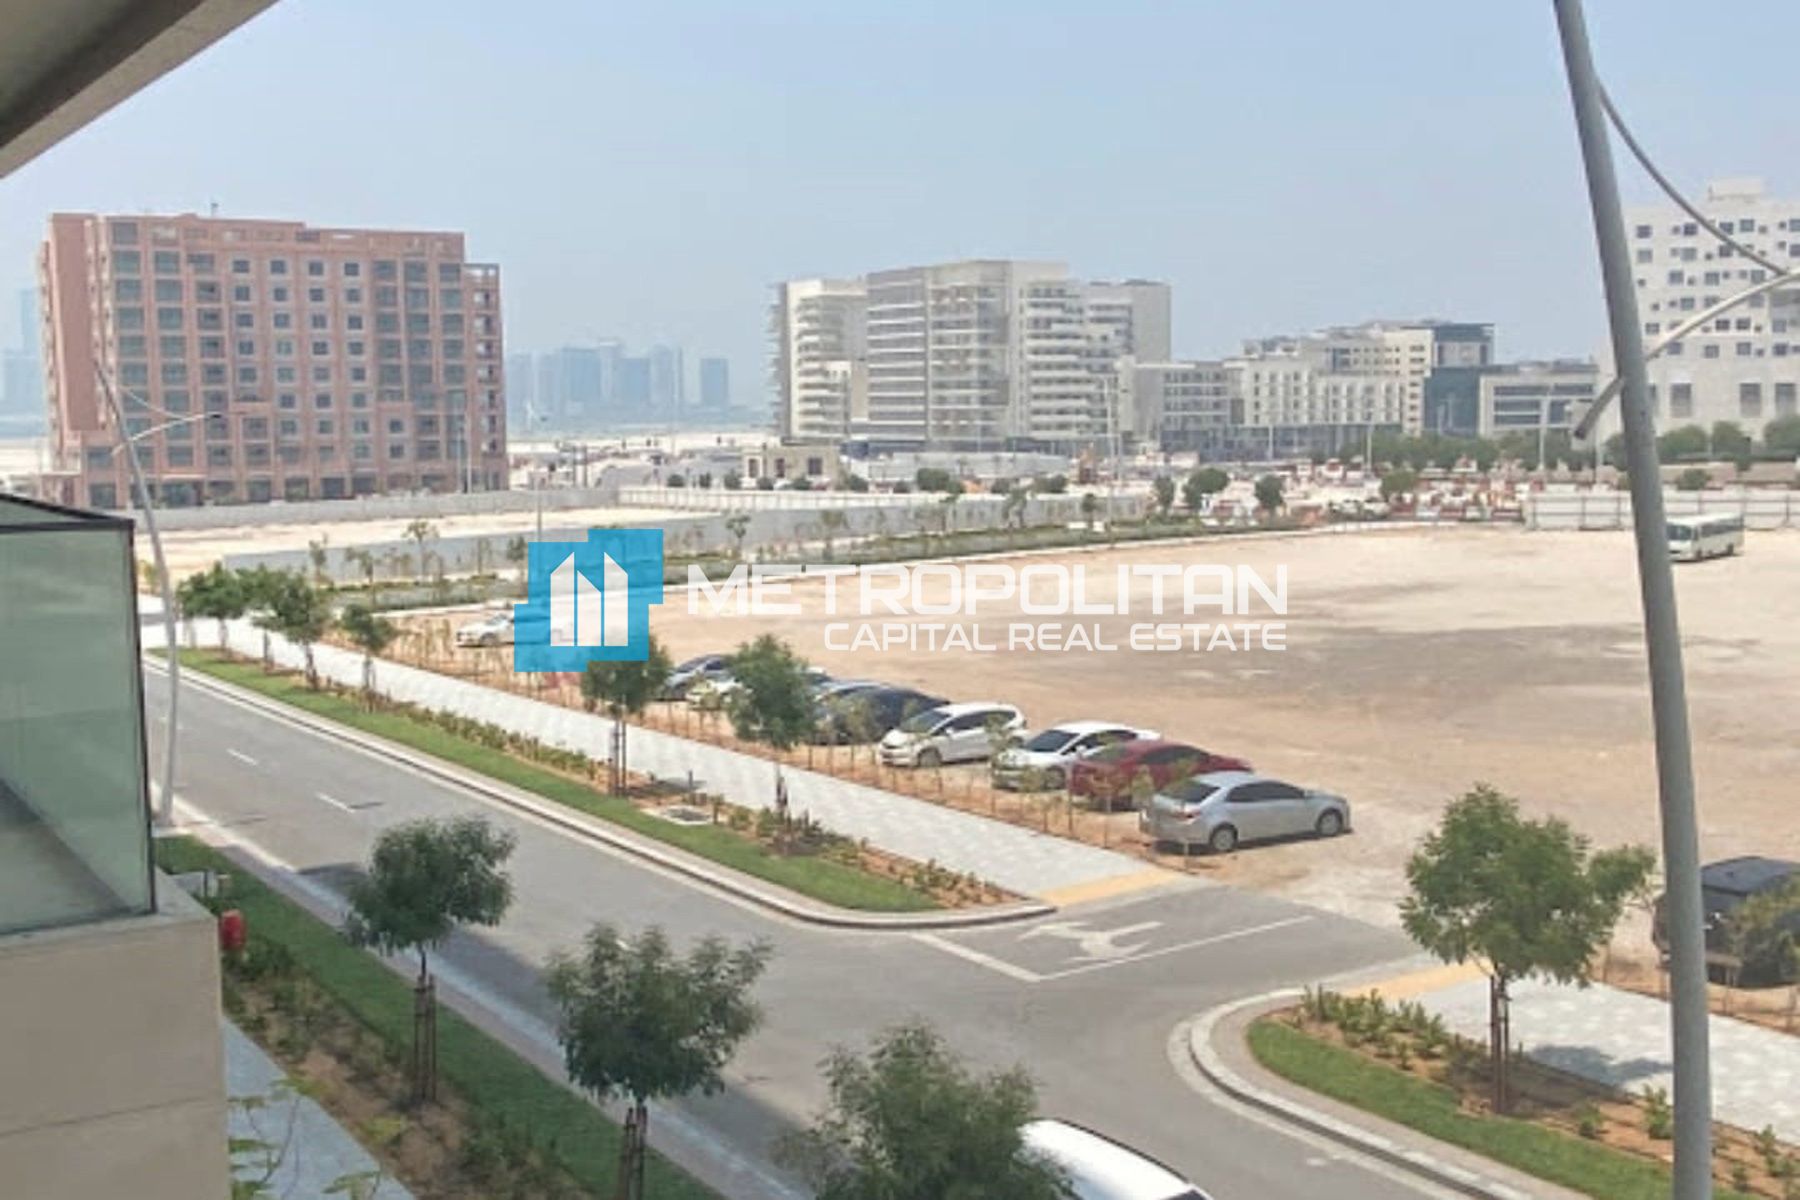 Image - Soho Square Residences, Saadiyat Island, Abu Dhabi | Project - Apartment